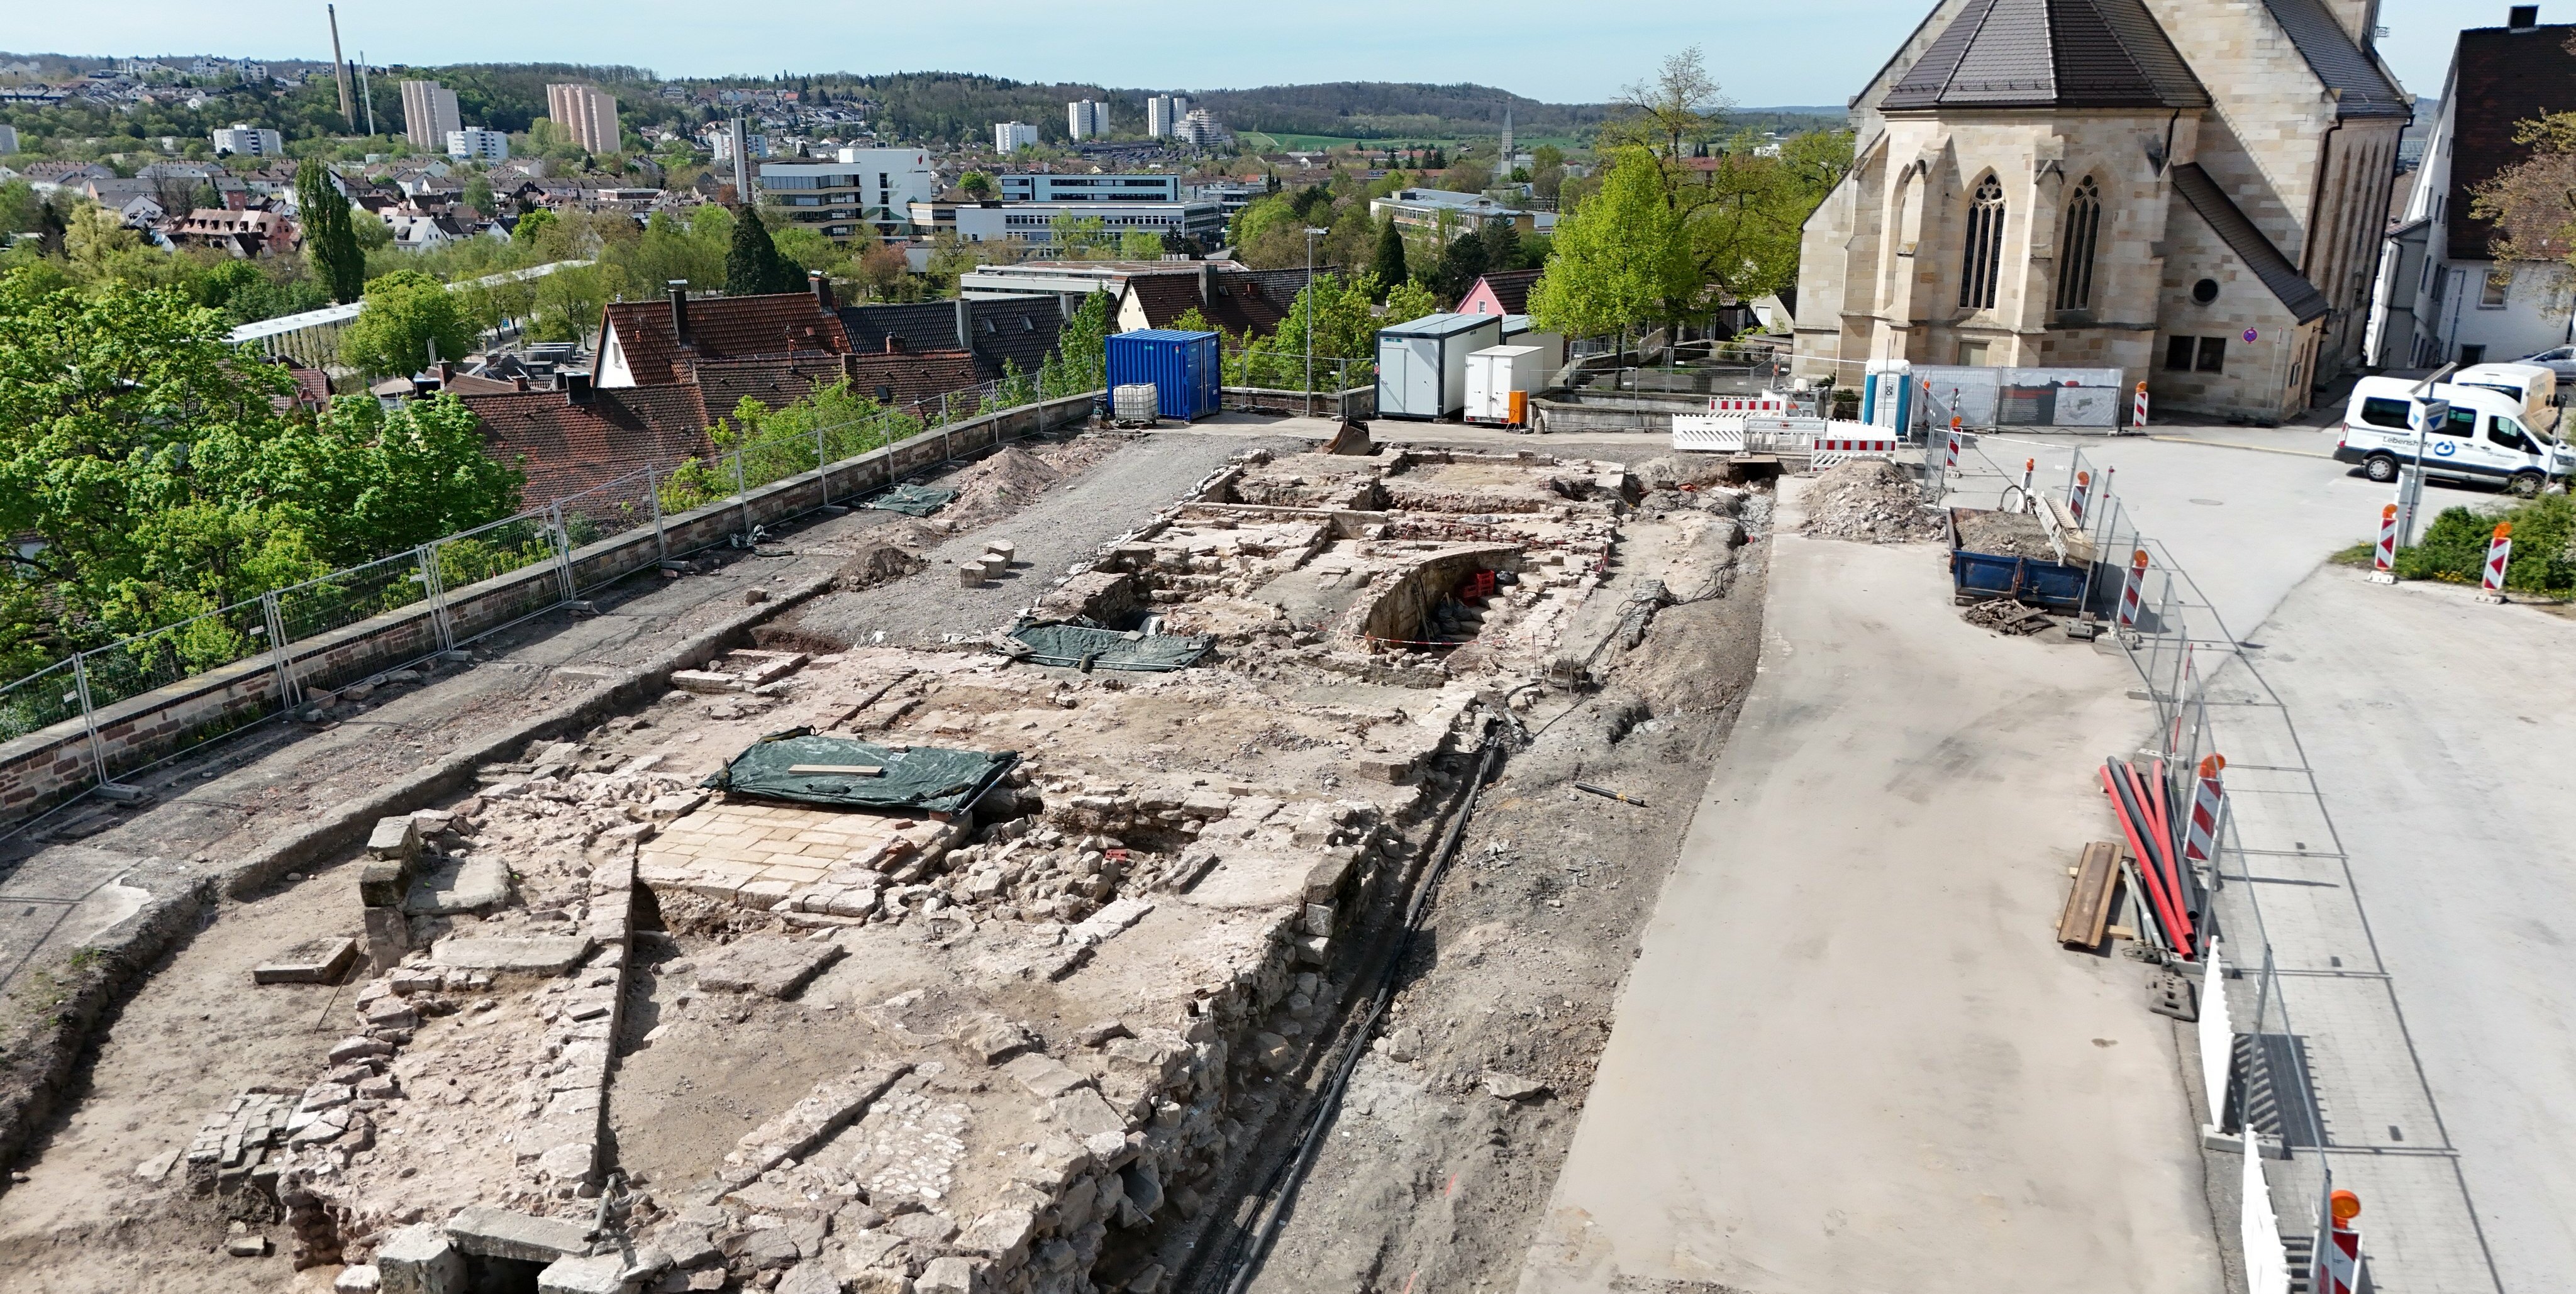 Zurzeit wird auf dem südlichen Teil des Schlossbergs gegraben. Bild: Dettenmeyer